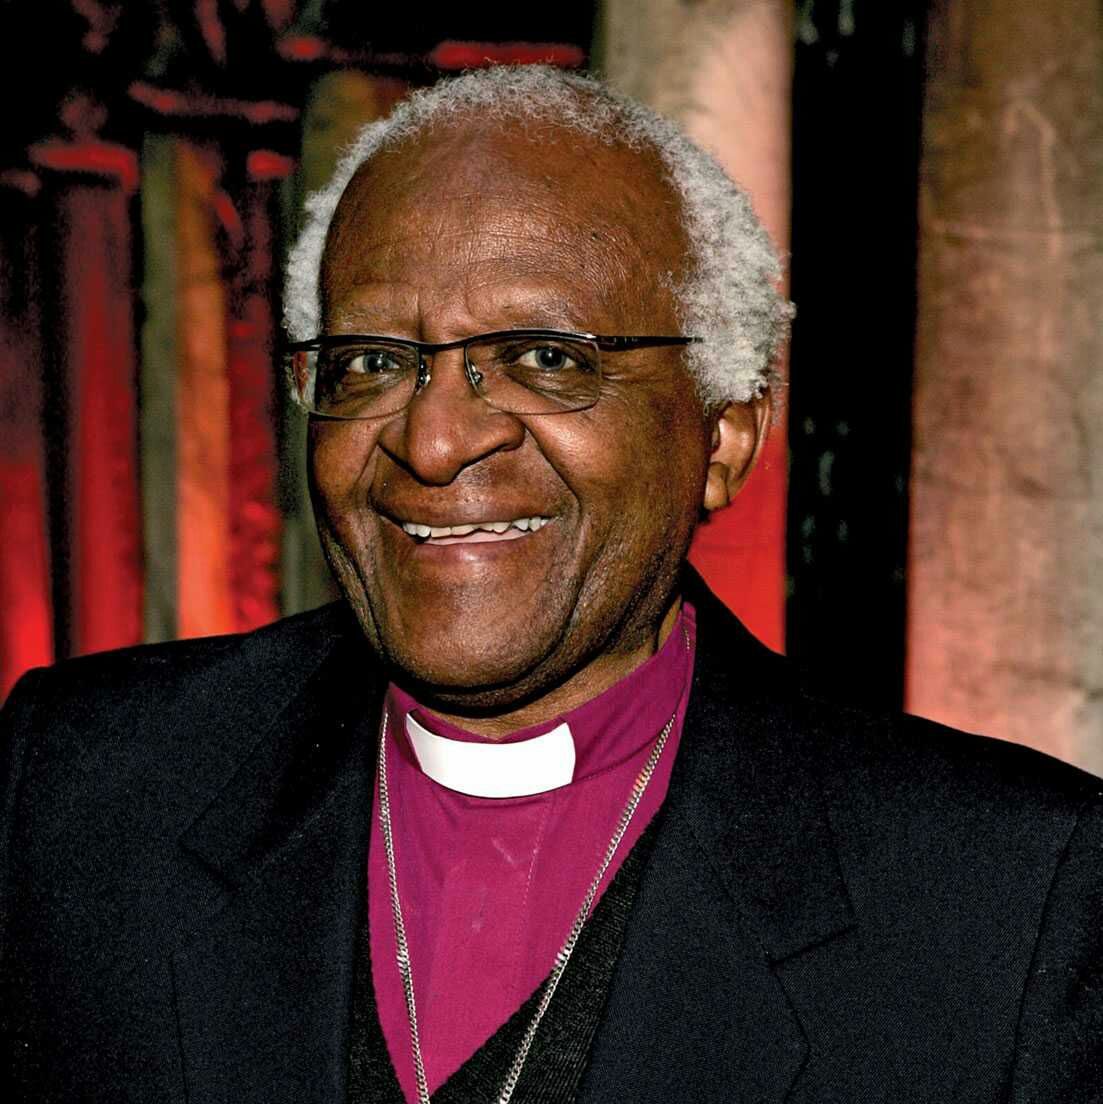 South Africa’s Archbishop Emeritus Desmond Tutu, Dead at 90